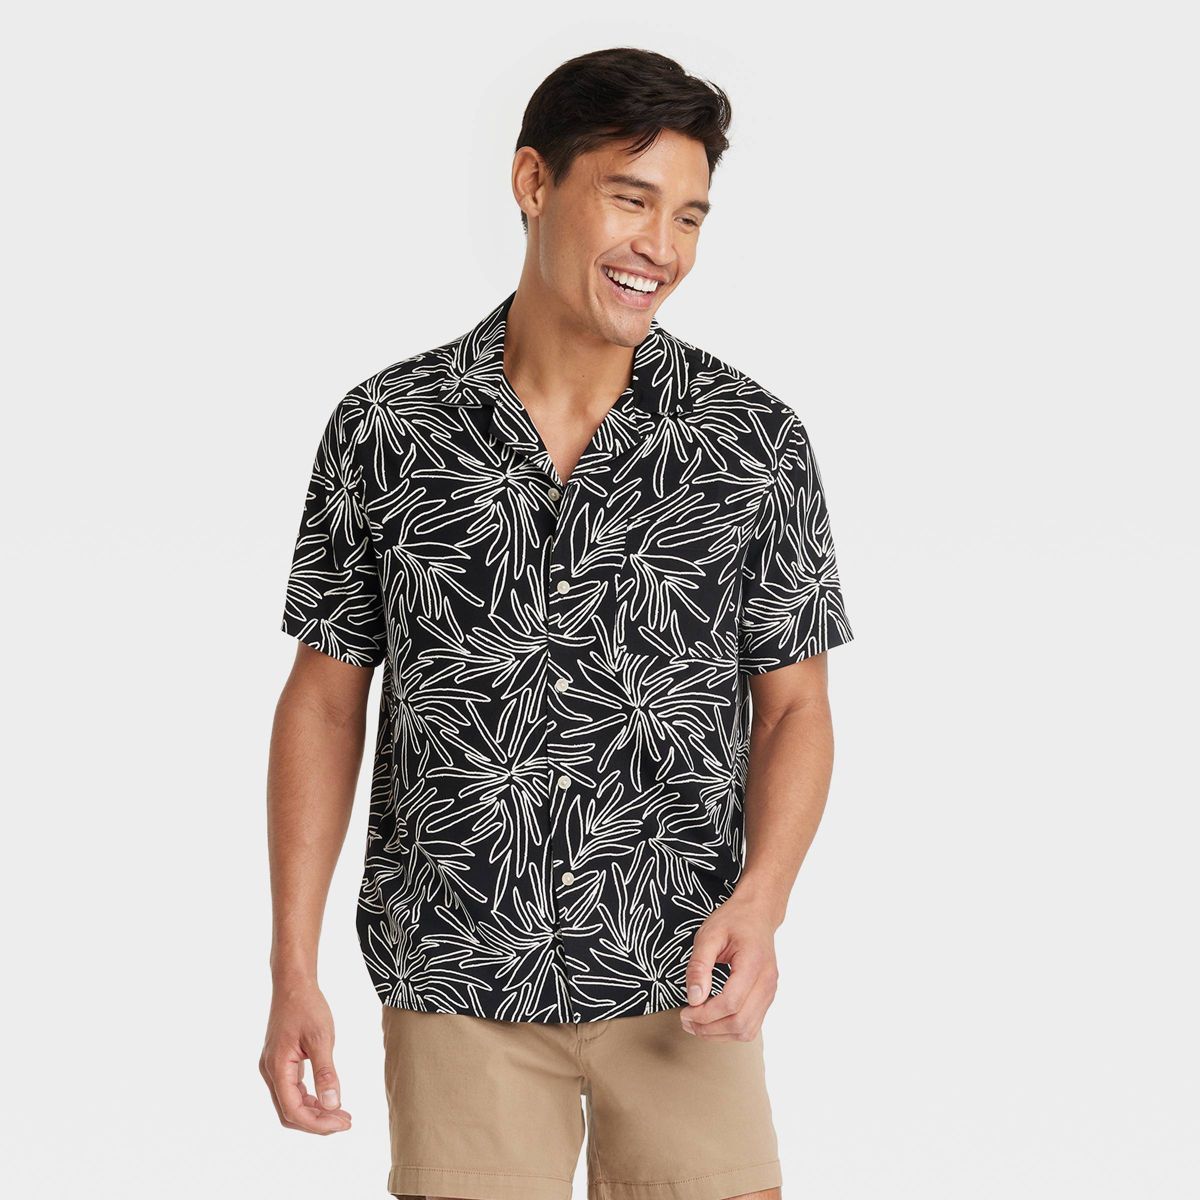 Men's Short Sleeve Button-Down Shirt - Goodfellow & Co™ | Target